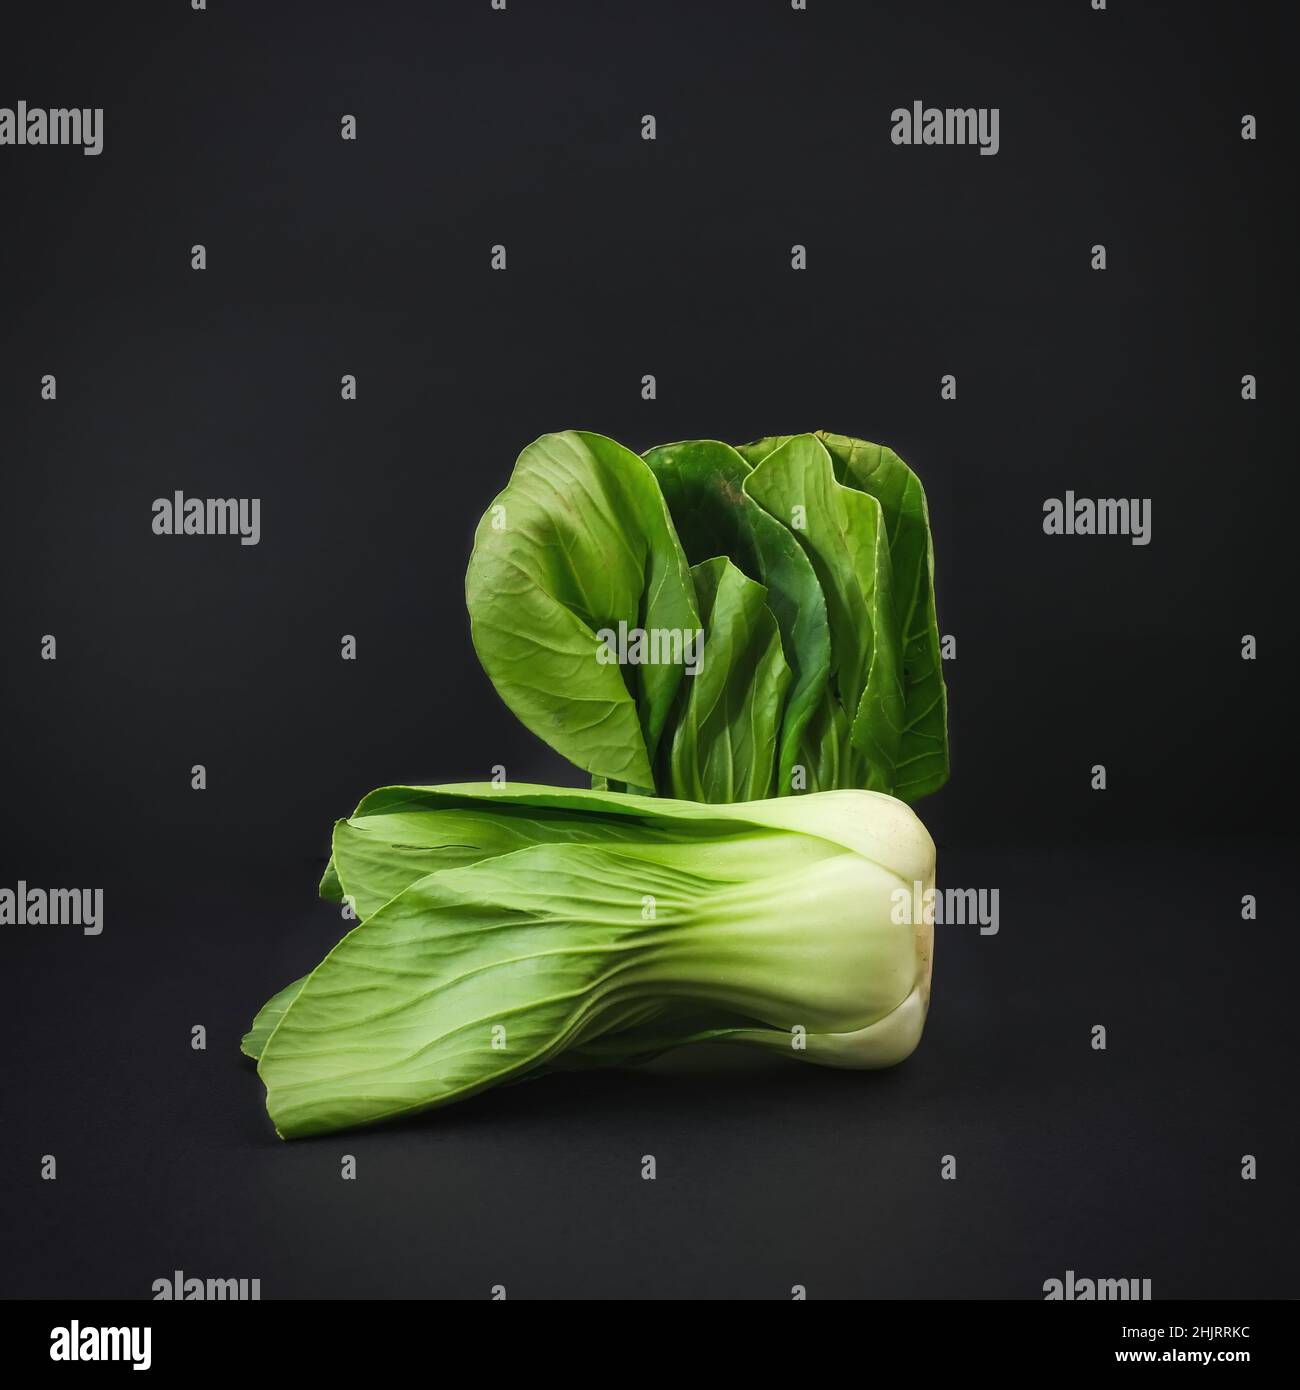 Bio vert bébé Bok Choy ou Brassica rapa chinensis sur fond noir.Légumes chinois populaires pour la cuisine asiatique. Banque D'Images